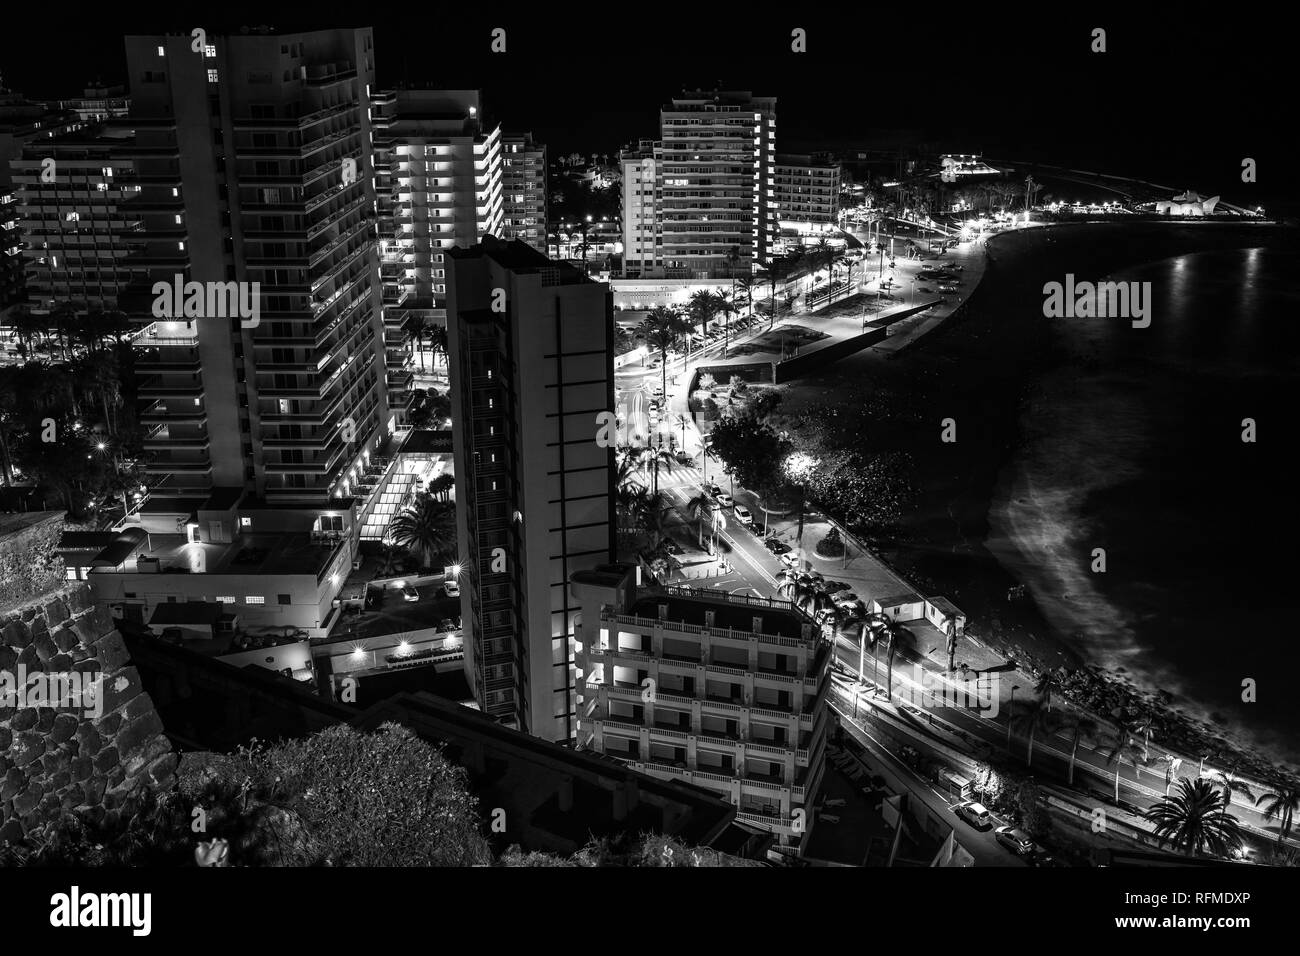 PUERTO DE LA CRUZ, Canaries, Espagne - 30 juillet 2018 : une vue de la nuit d'une hauteur de la ville. Point de vue : Mirador La Paz. Noir et blanc. Banque D'Images